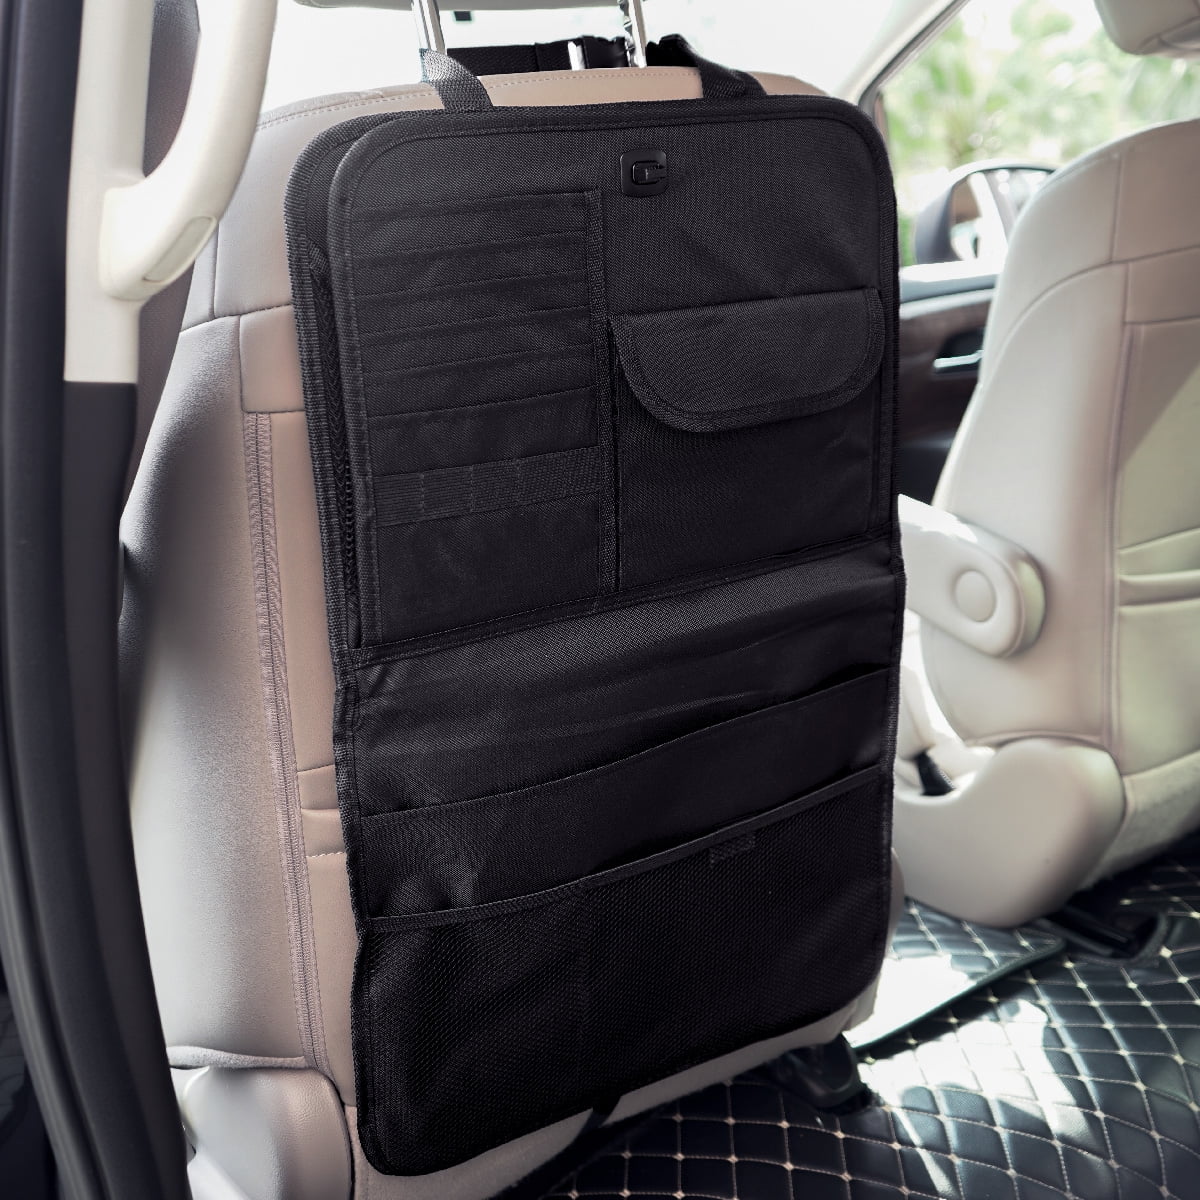 Car Seat Back Storage Bag Organizer Holder Food Drink Keep Warm/Cold Pocket Bag 